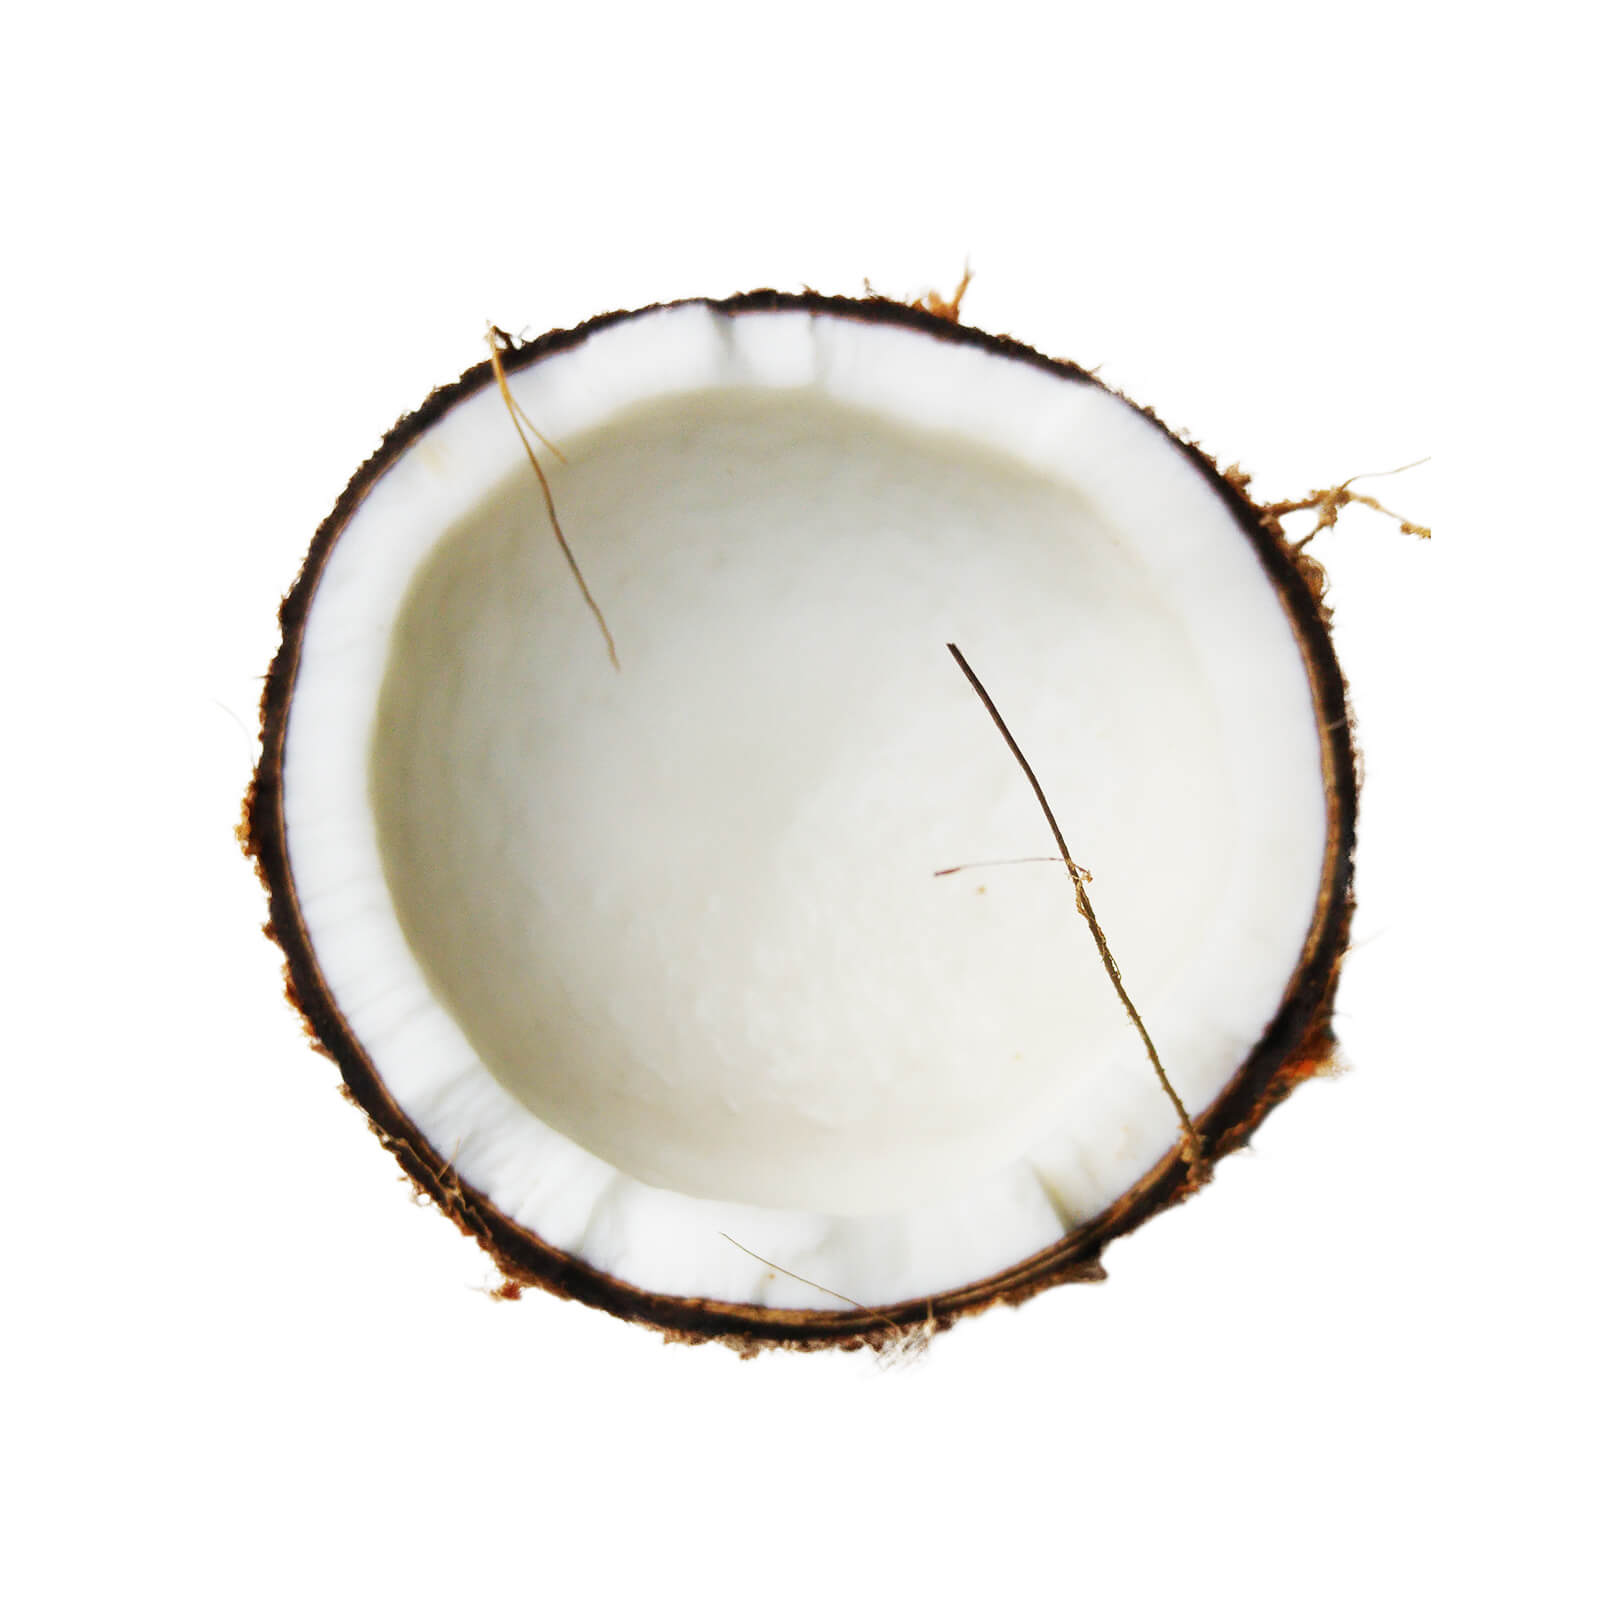 coconut-oil-health